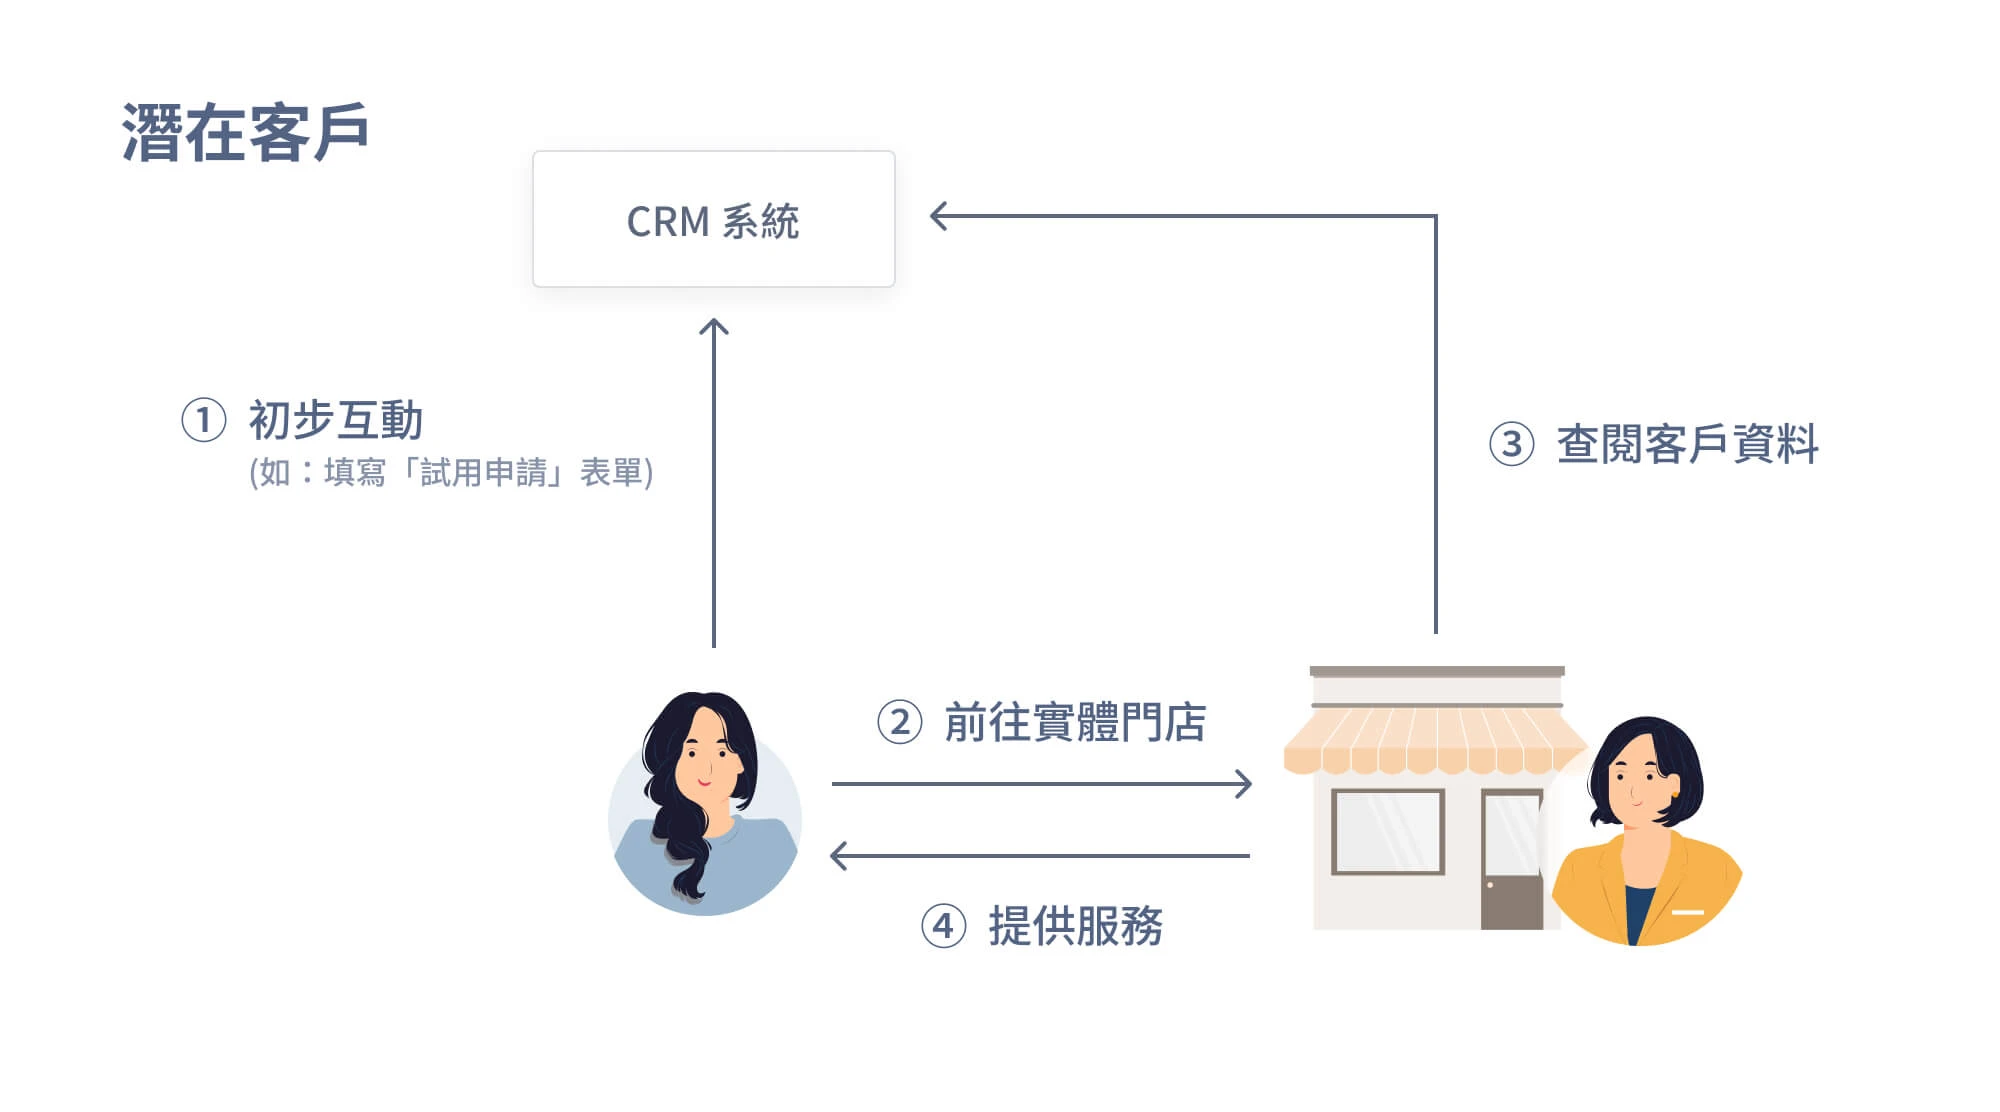 實體門店透過 CRM 接觸潛在客戶流程